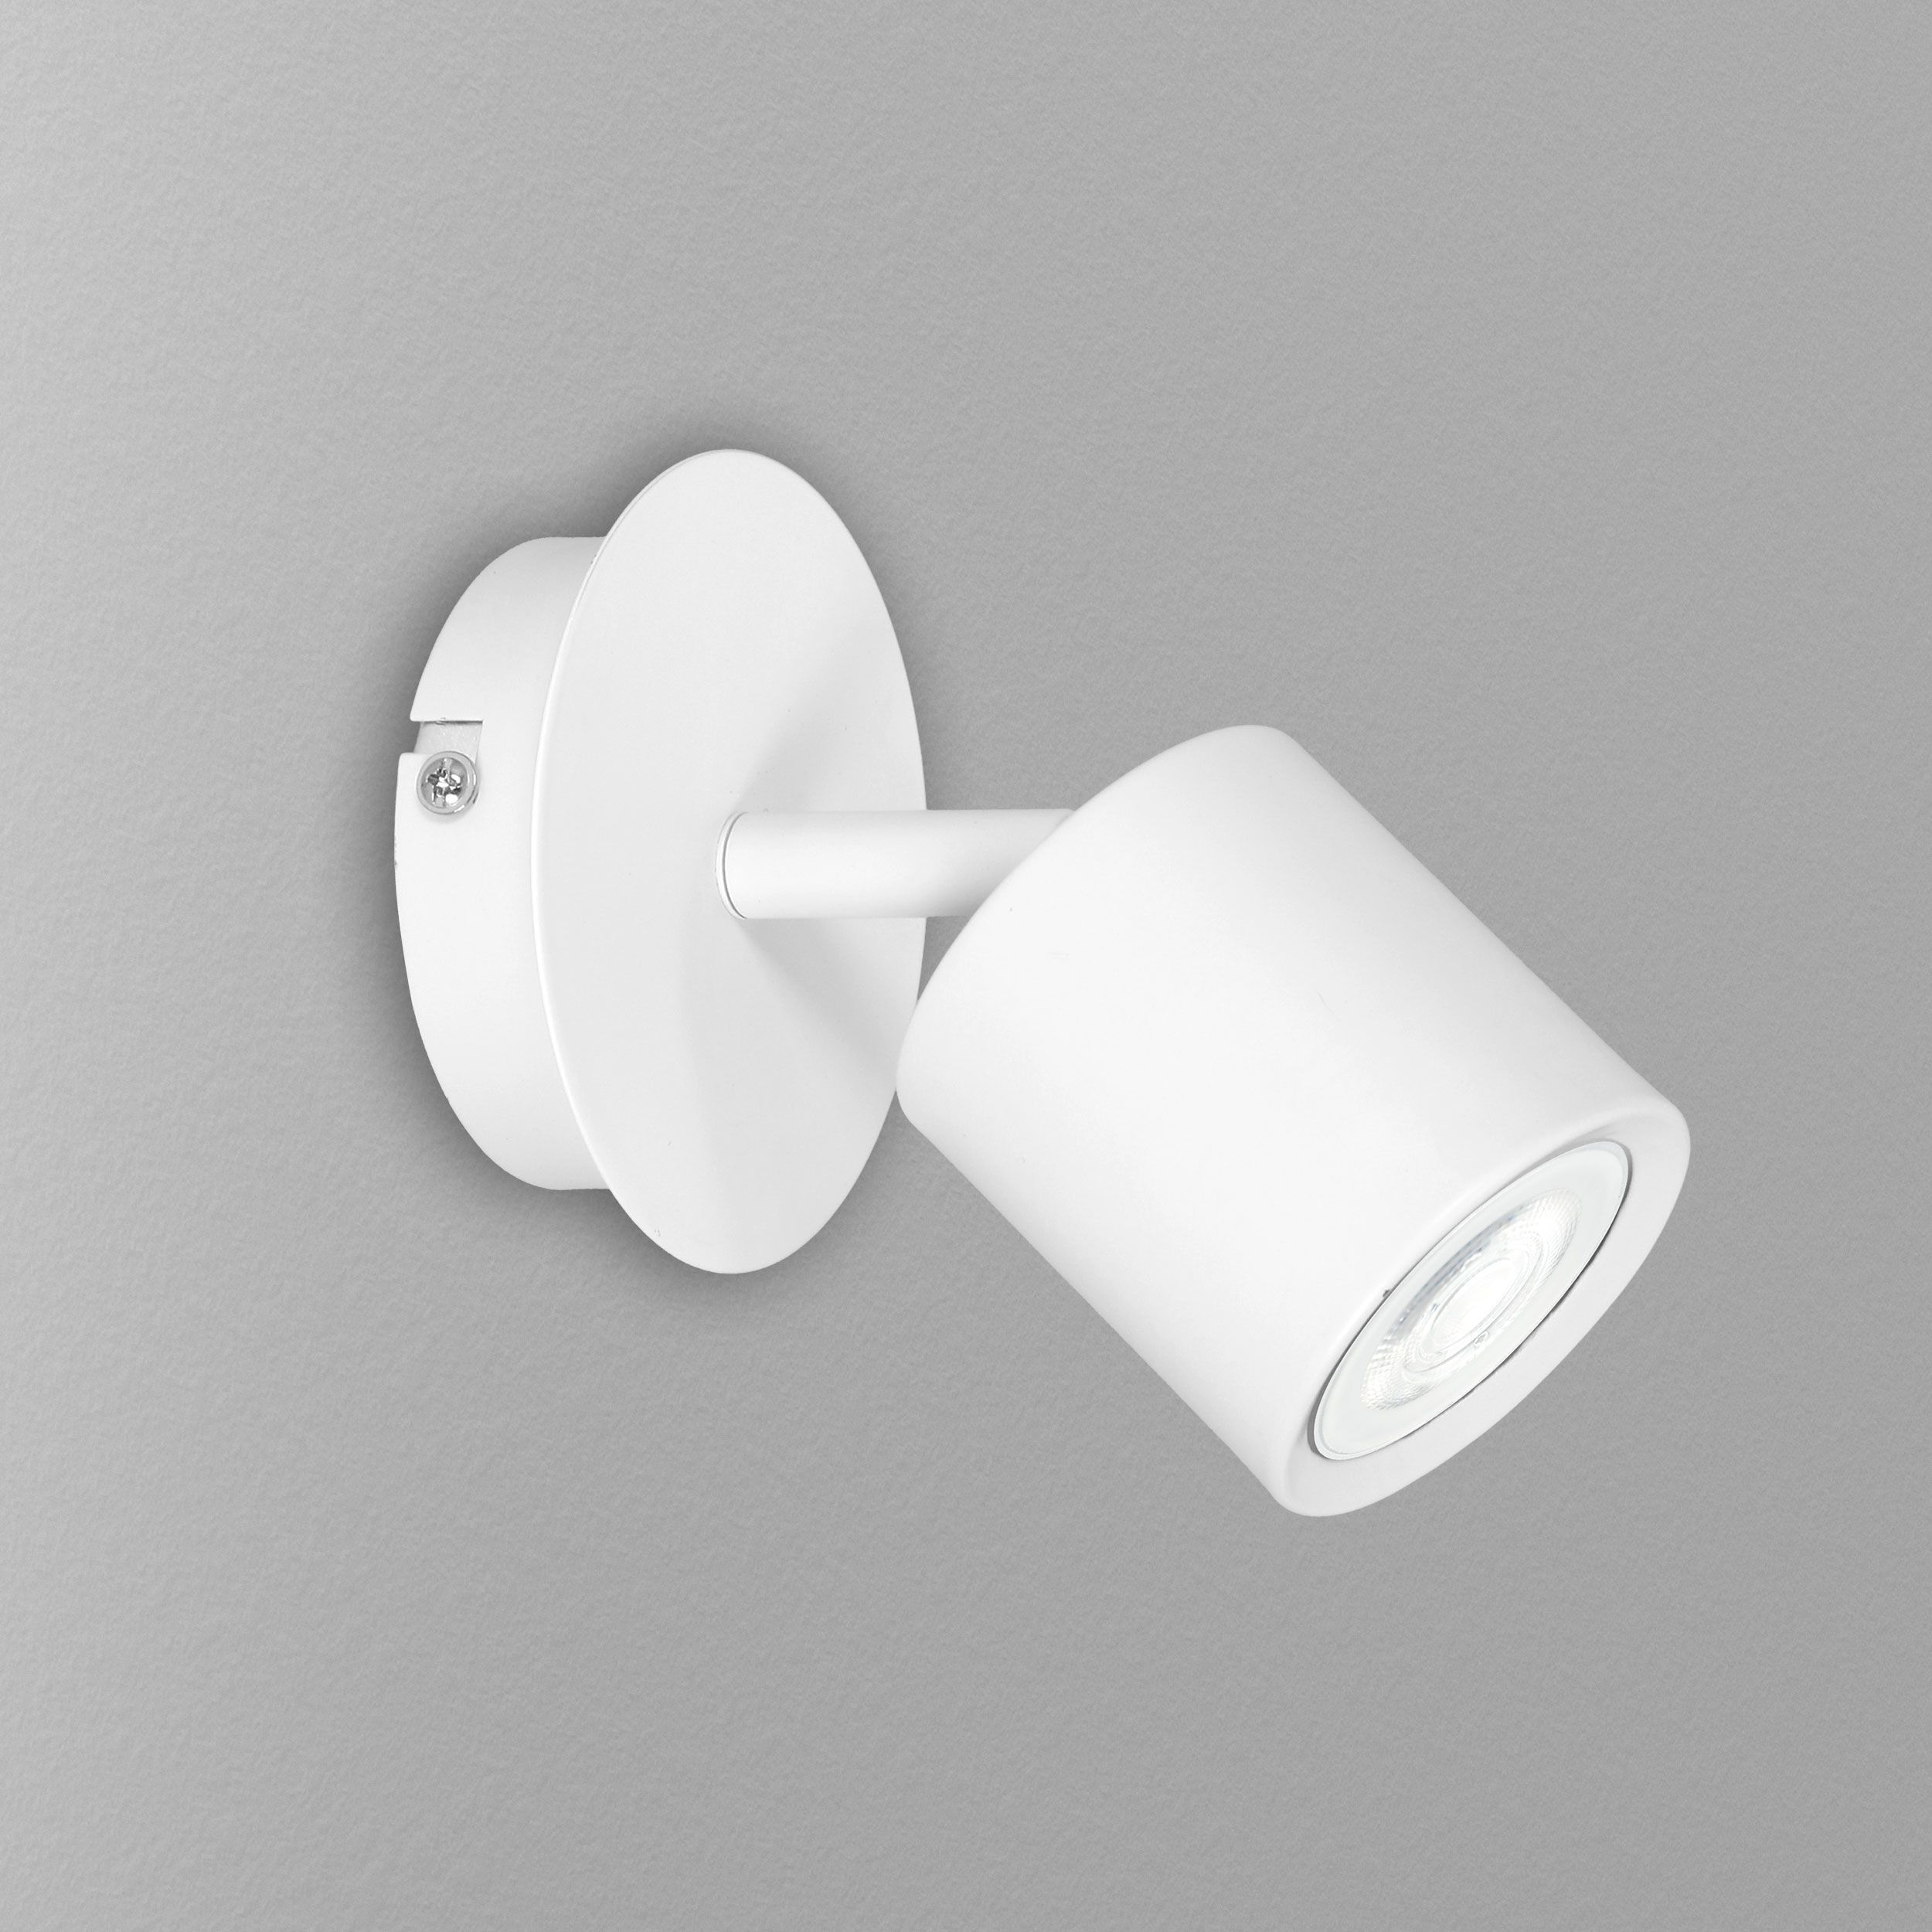 Spot Lampe Wand Weiß klein verstellbar GU10